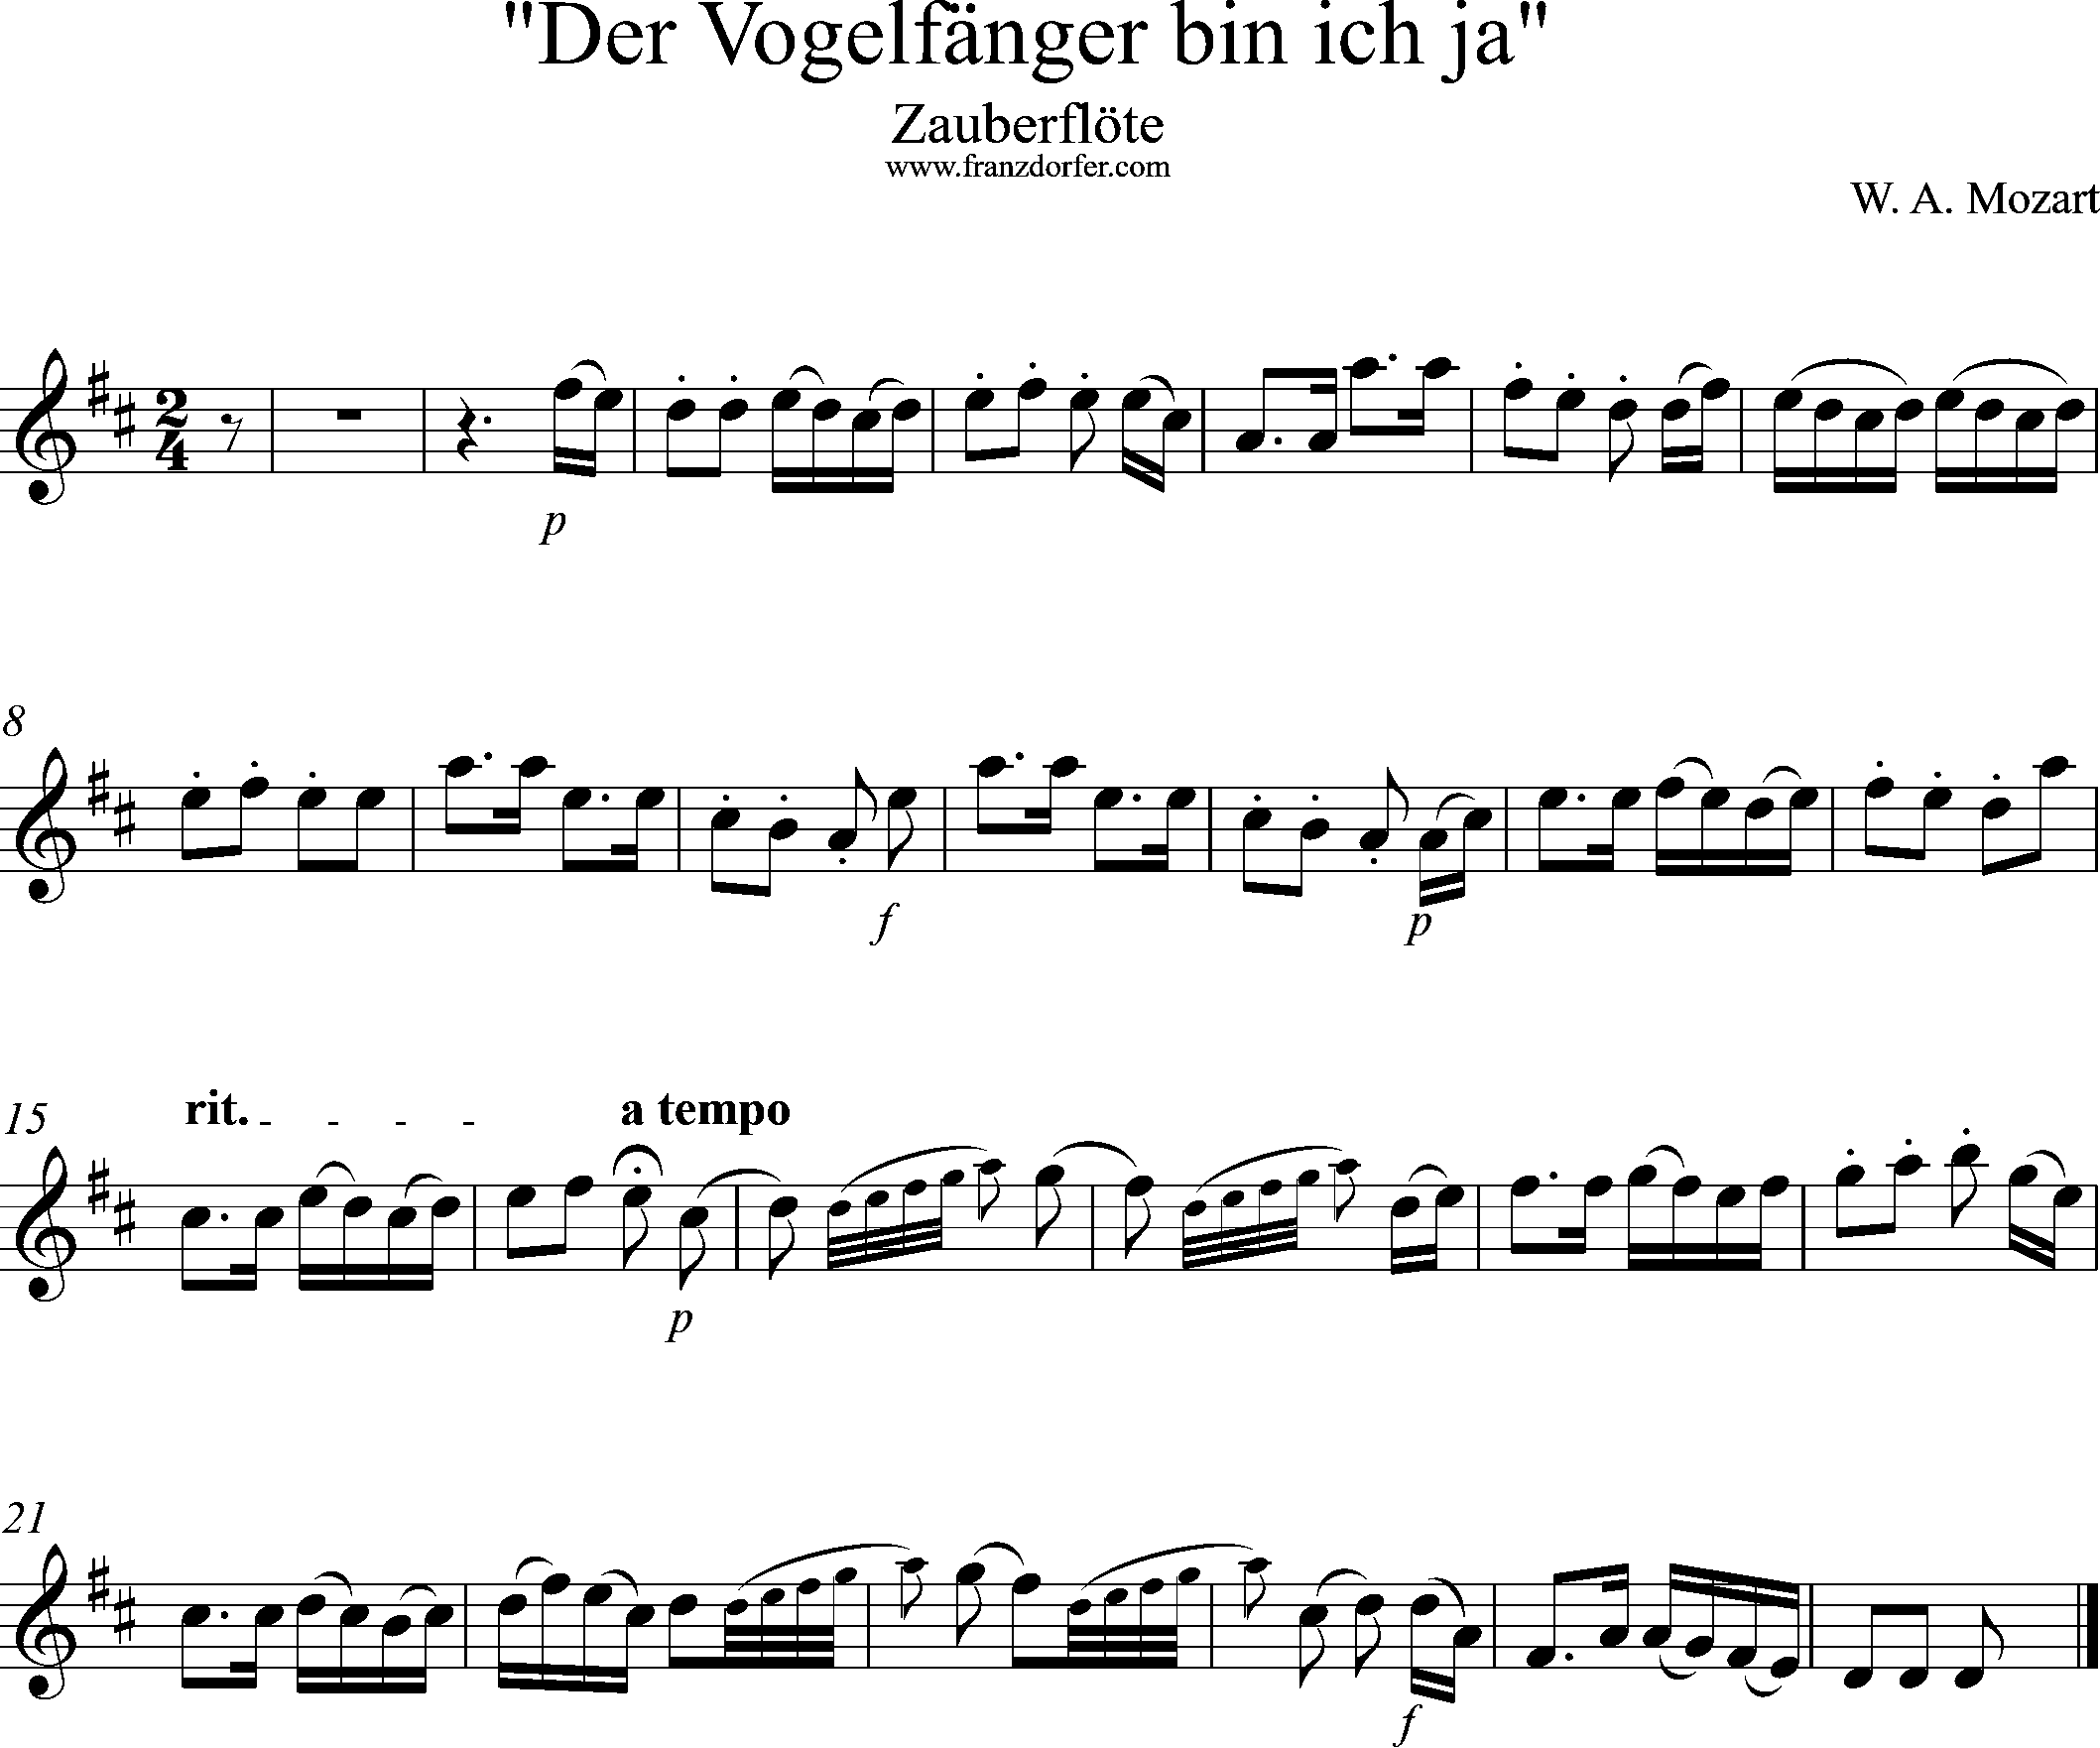 Uauberflöte, Vogelfängerlied, Solostimme, D-Dur